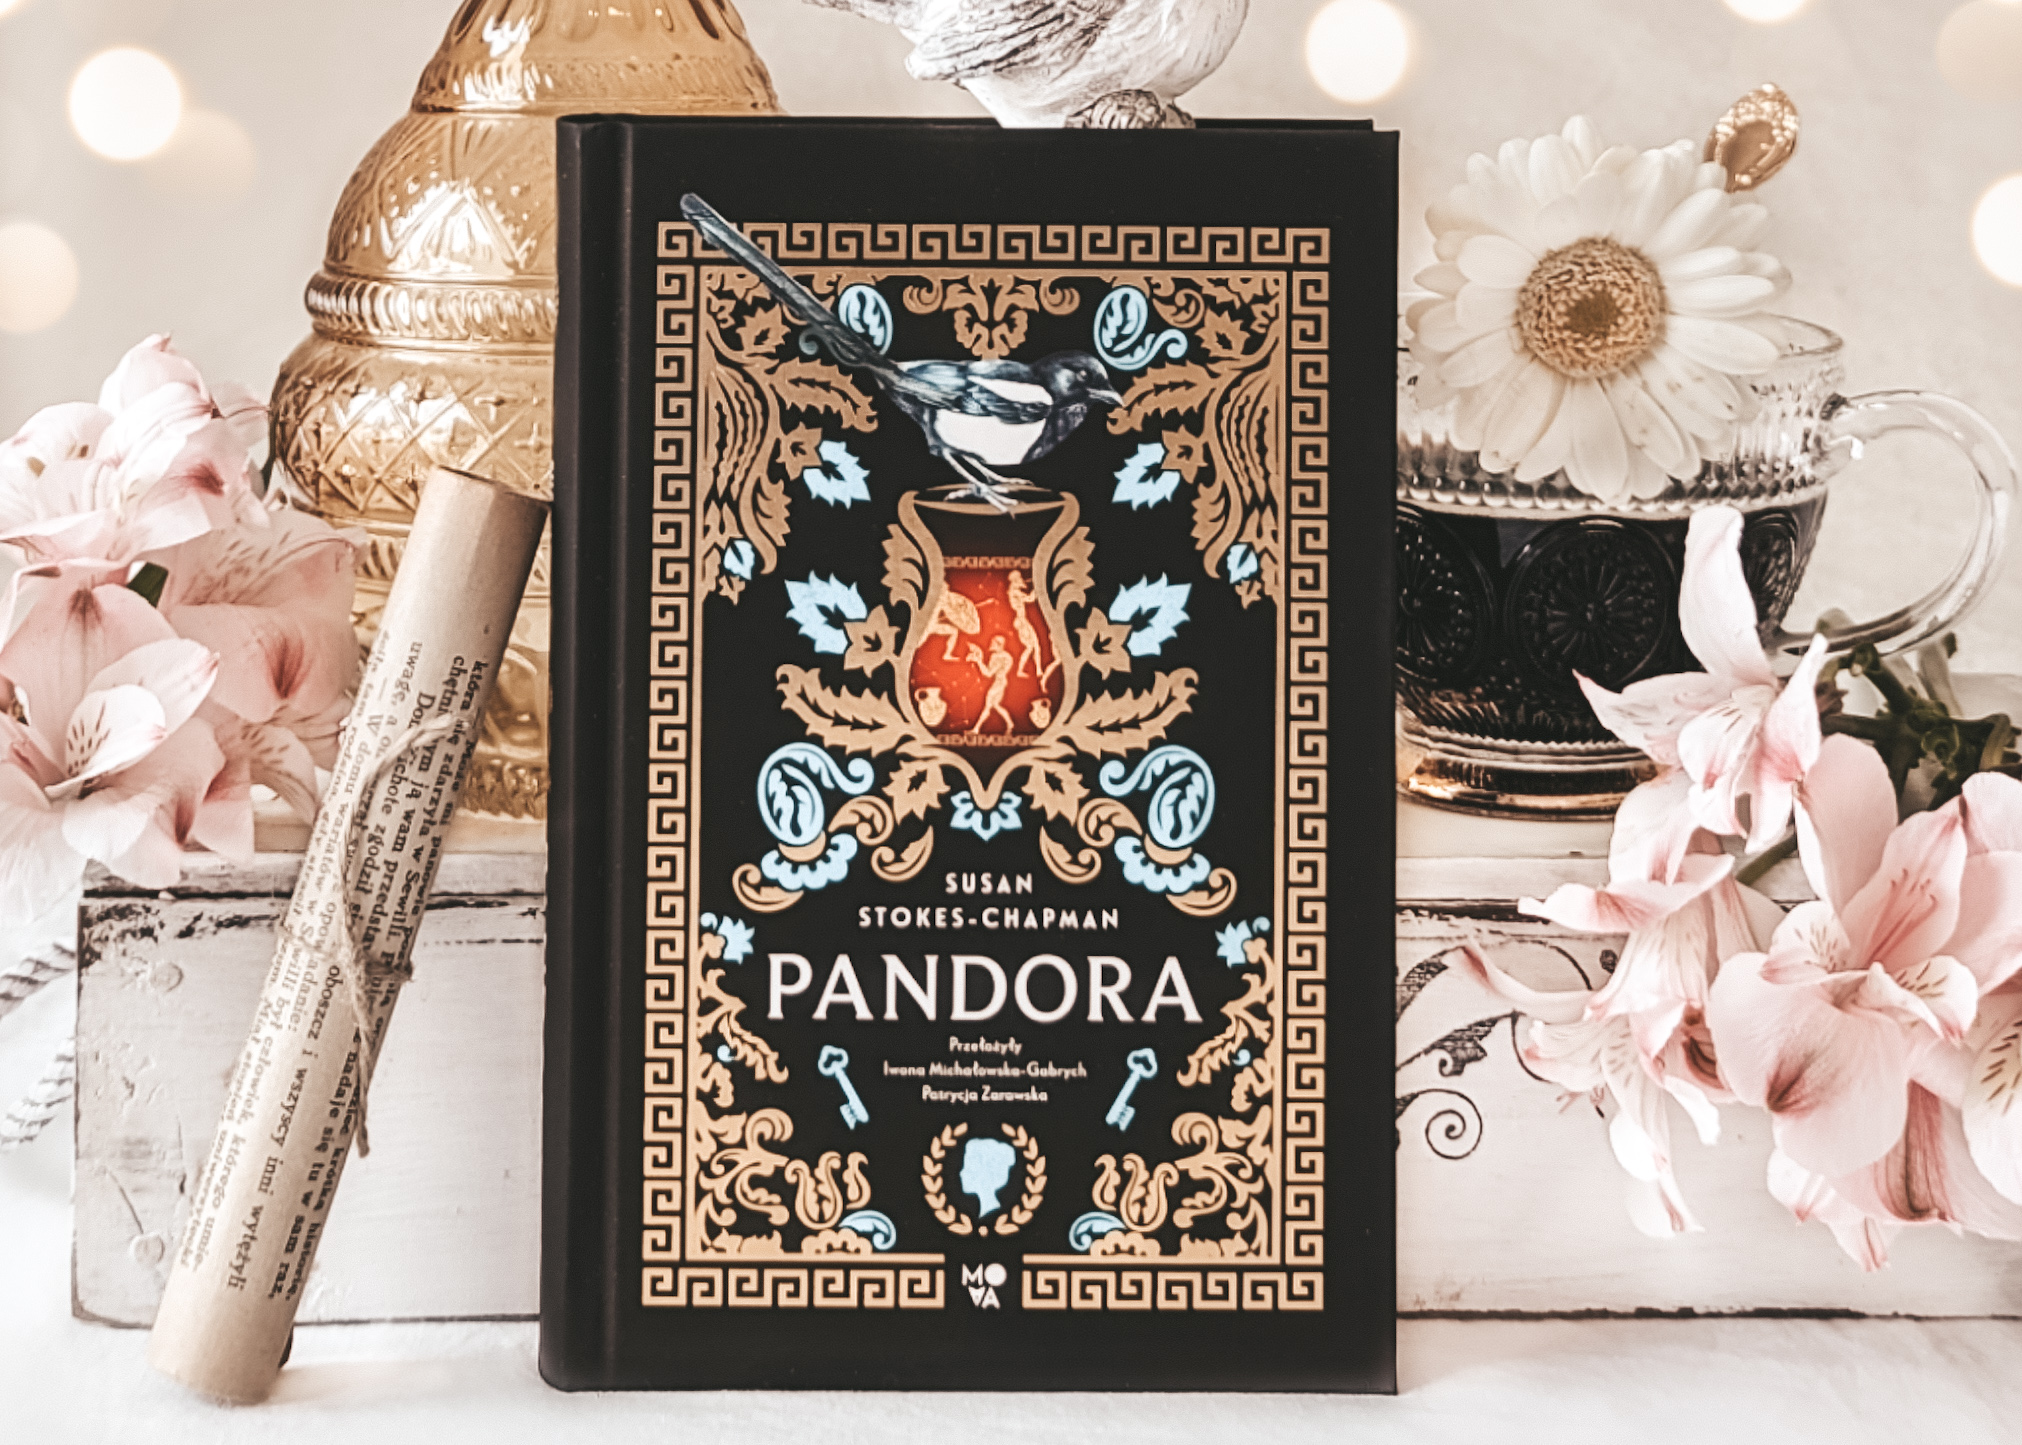 „PANDORA” – SUSAN STOKES-CHAPMAN | Niezwykle inspirująca eksploracja mitu o tajemniczej Pandorze!